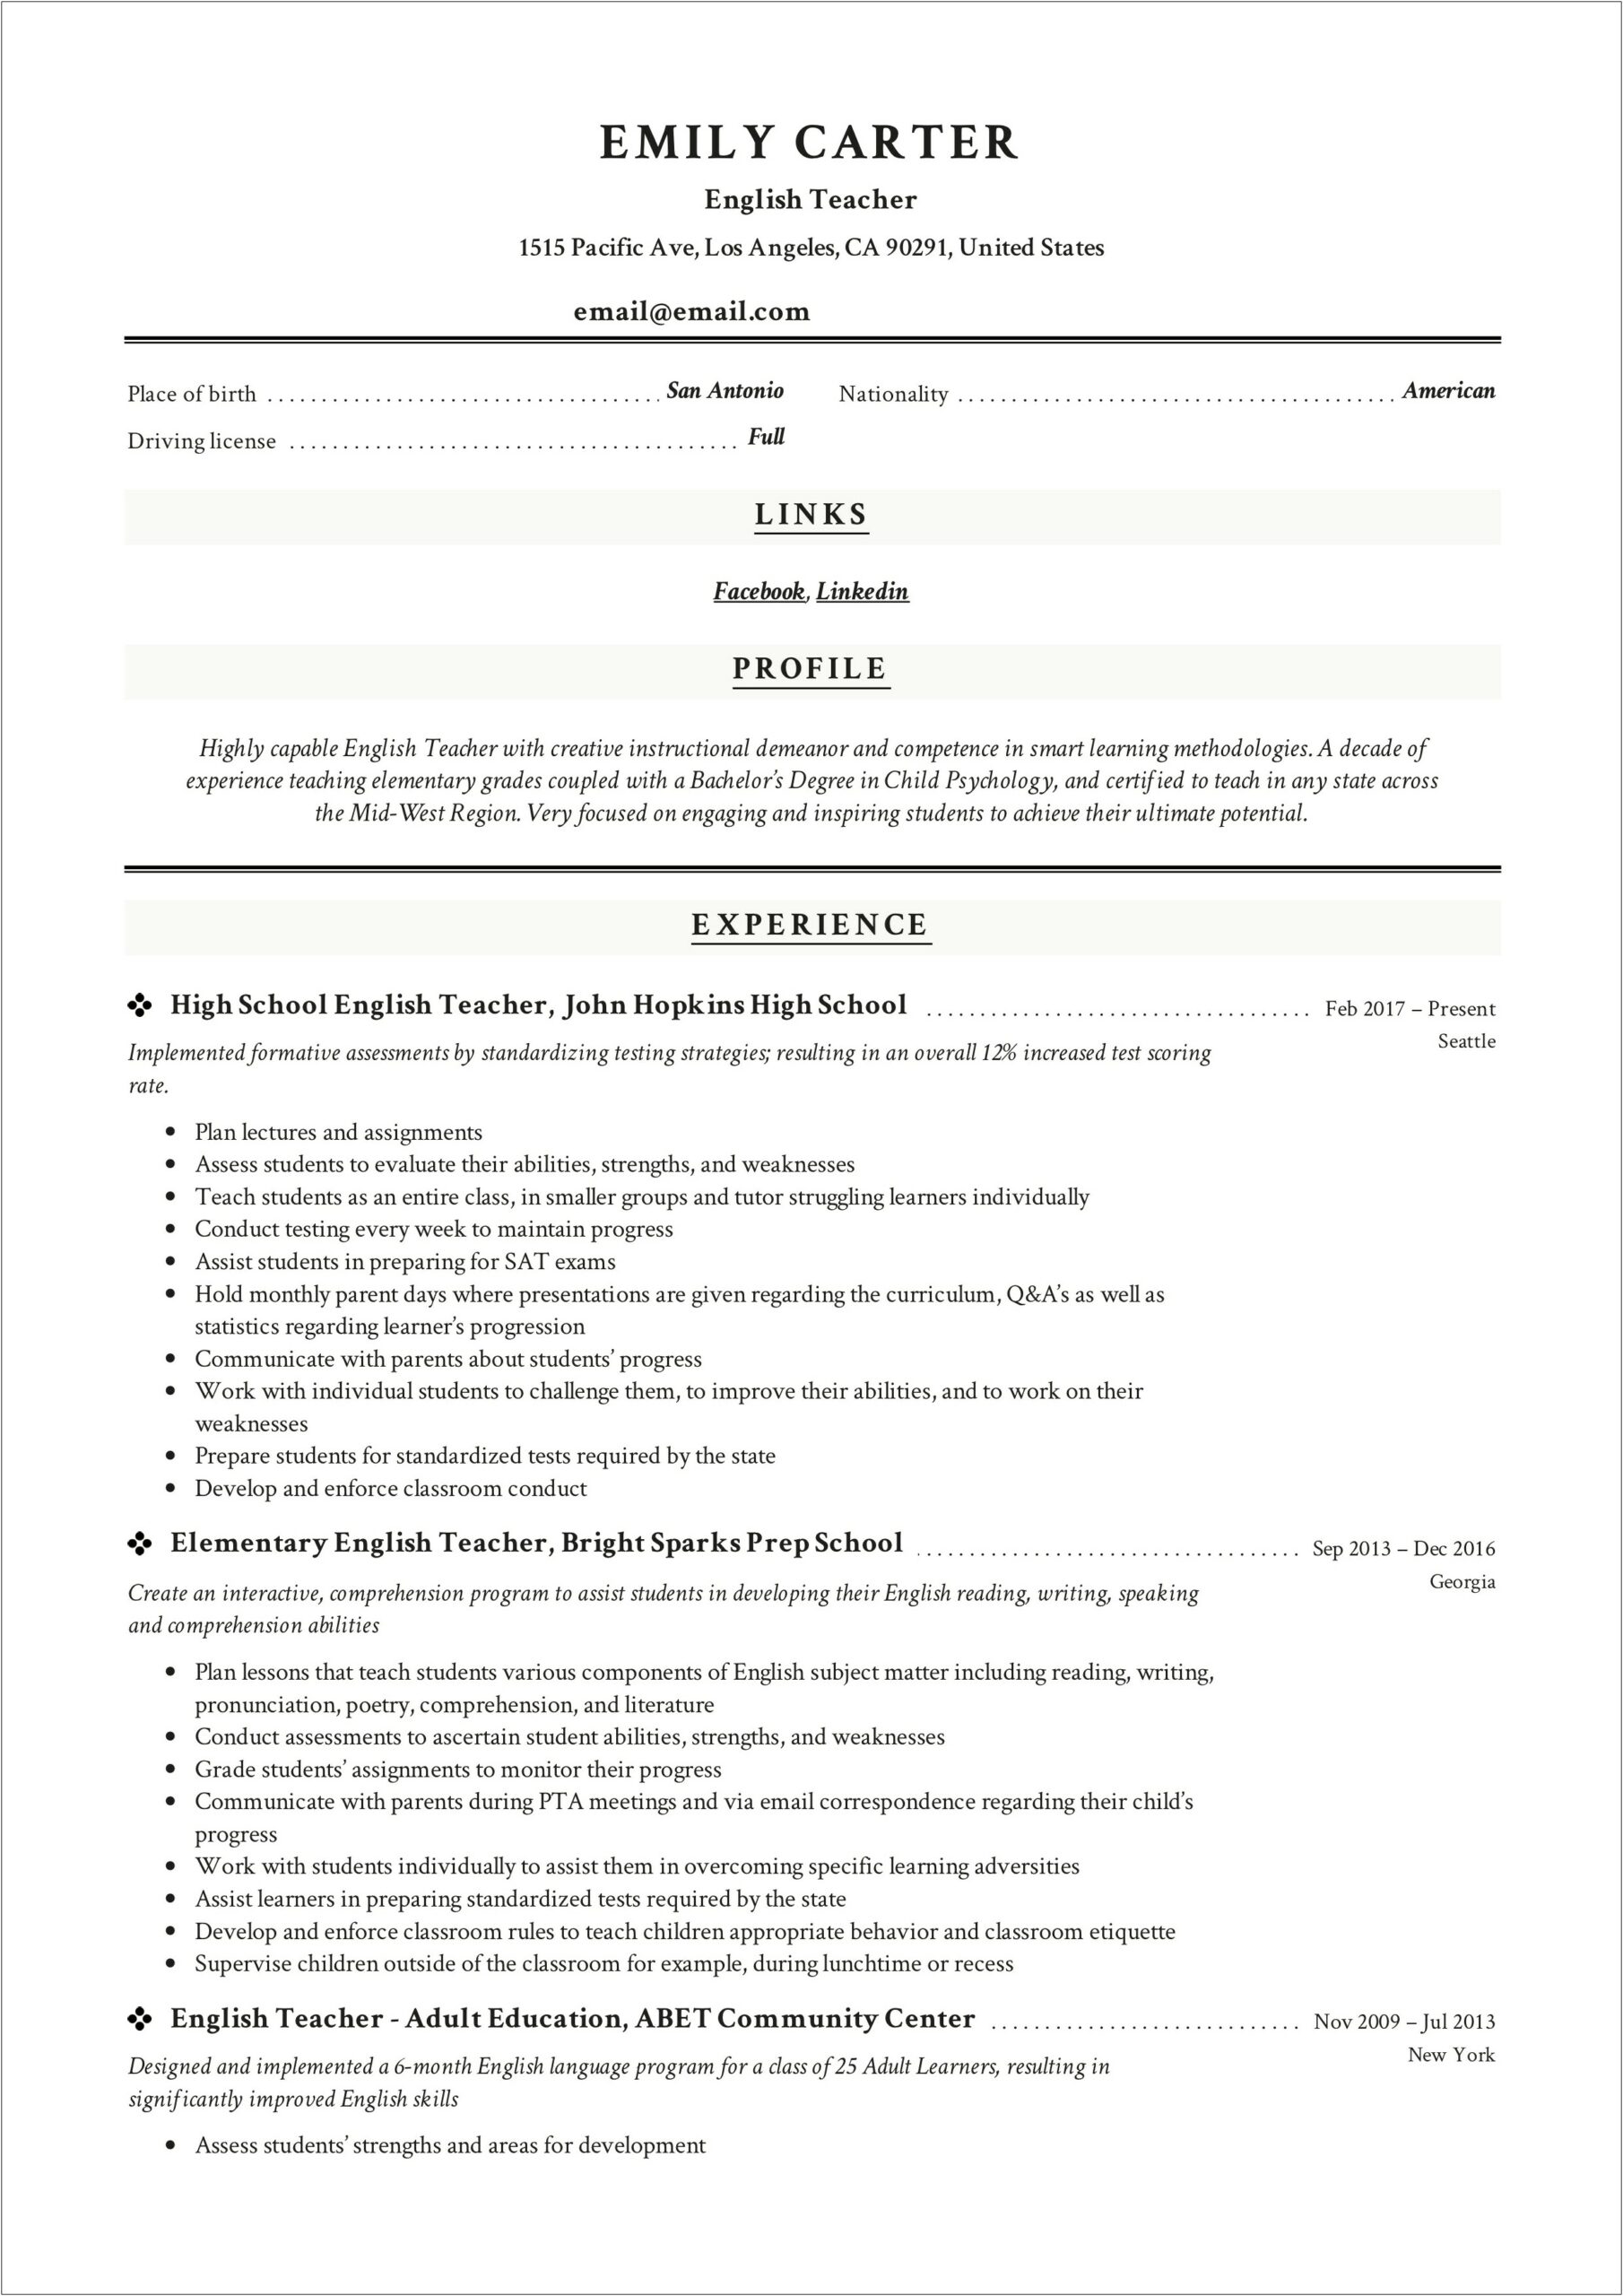 Sample American Resume 2019 Format